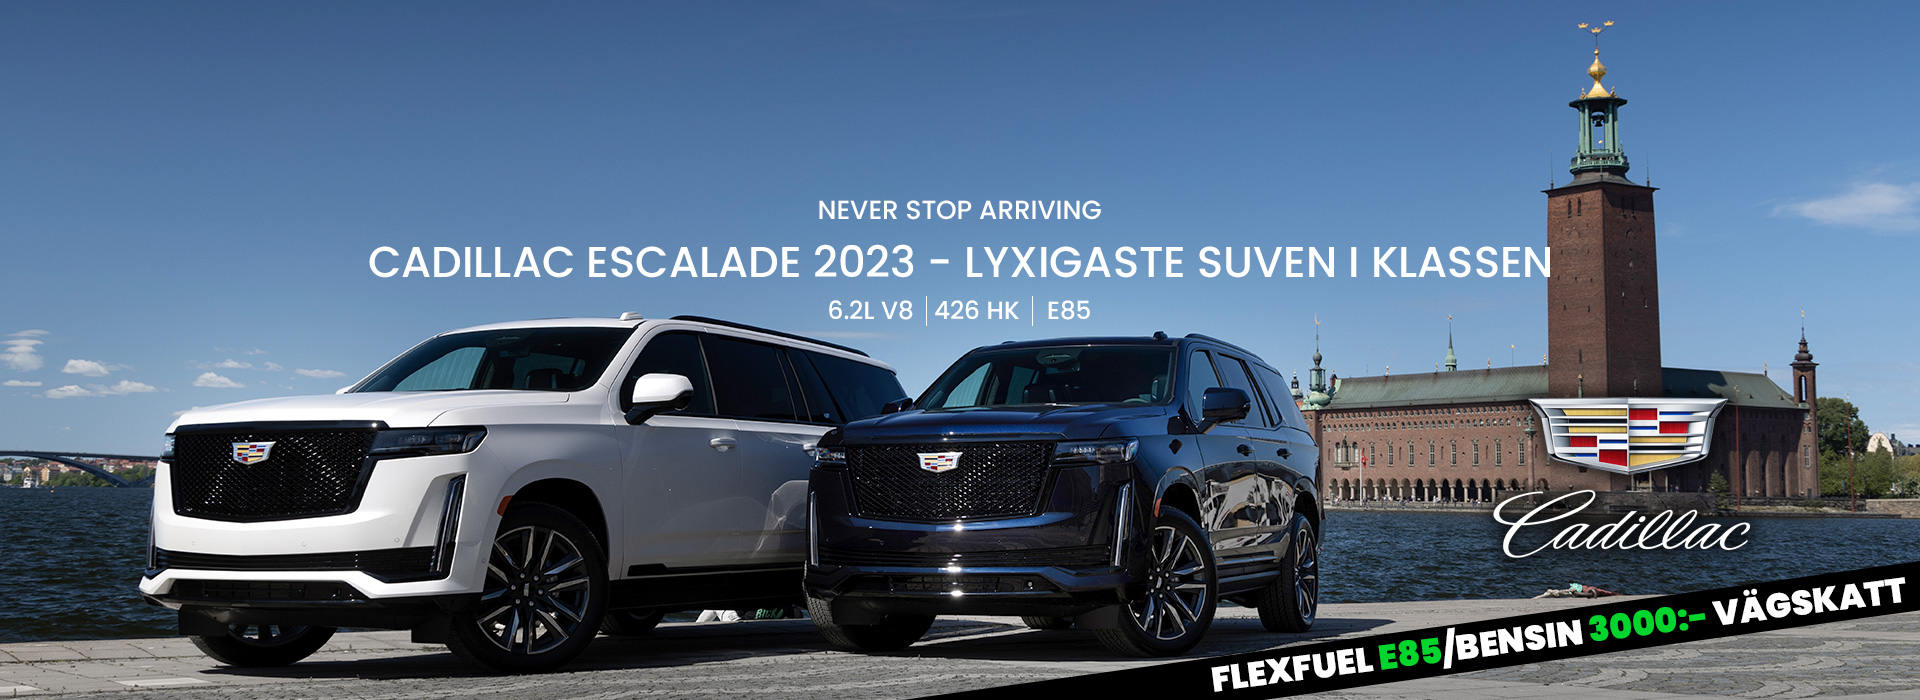 Cadillac Escalade 2023 Sverige Erbjudande E85 Flexfuel vägskatt